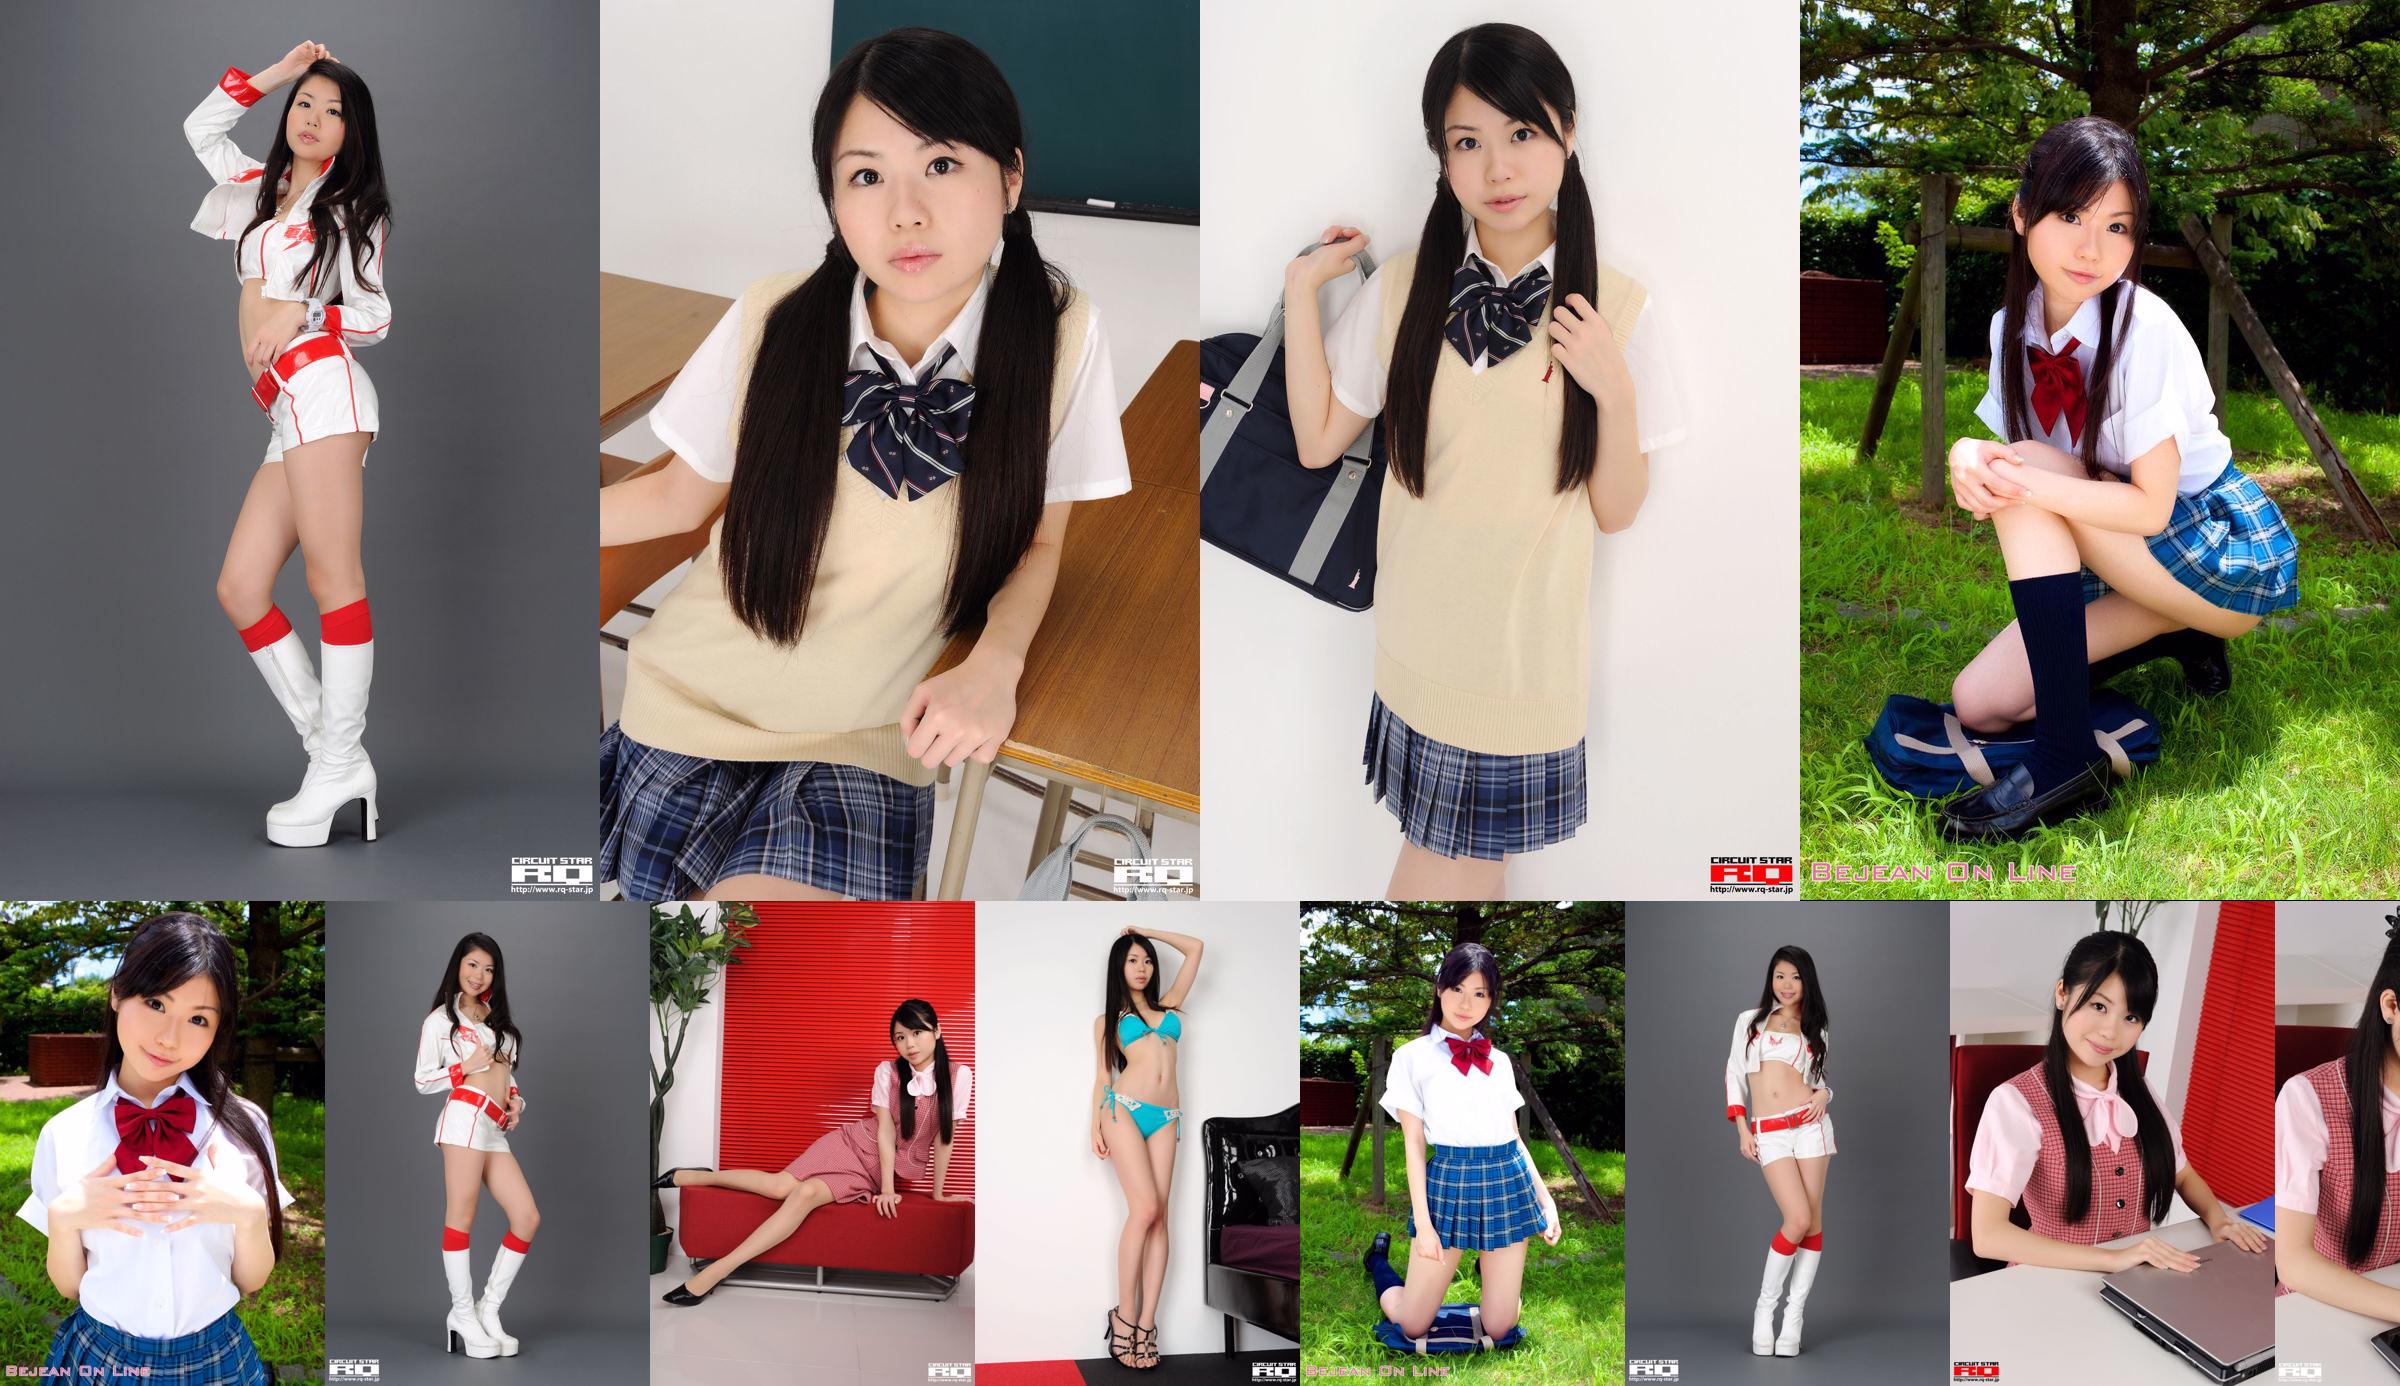 [RQ-STAR] NO.00436 Série de uniforme escolar Ikehara Toumi School Girl No.80e3a7 Página 4